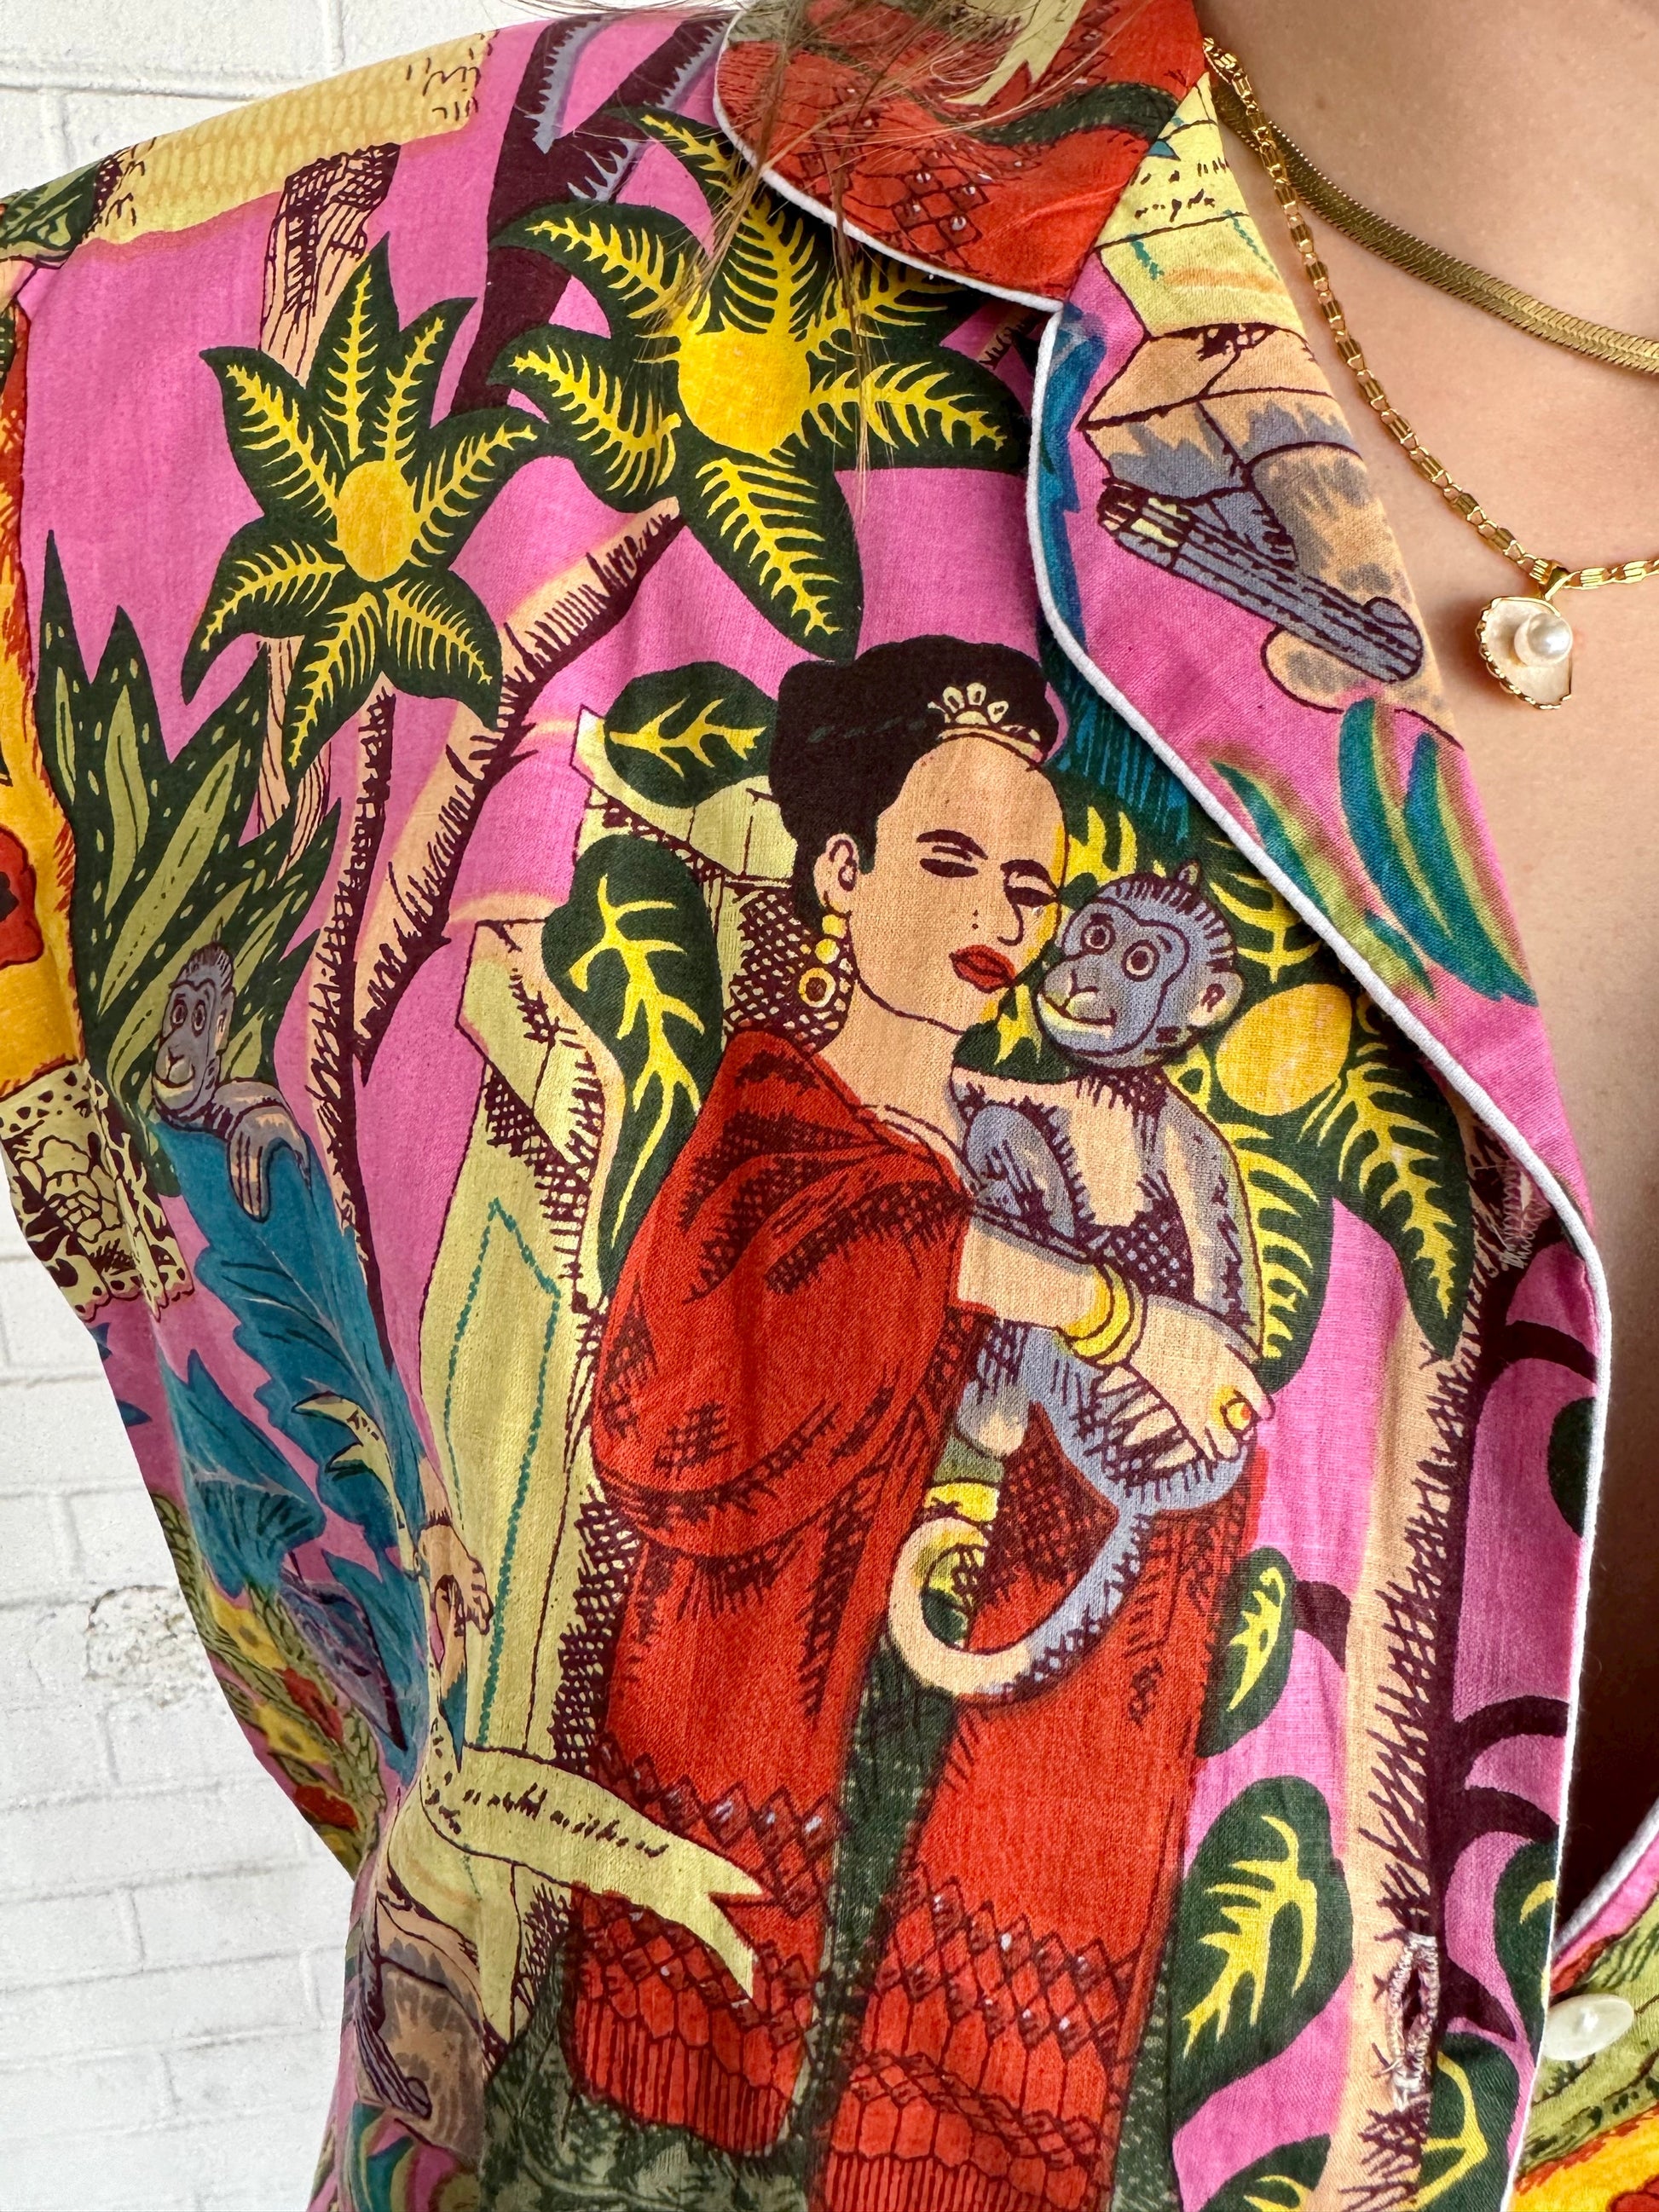 Frida Kahlo - Imli.lifestyle